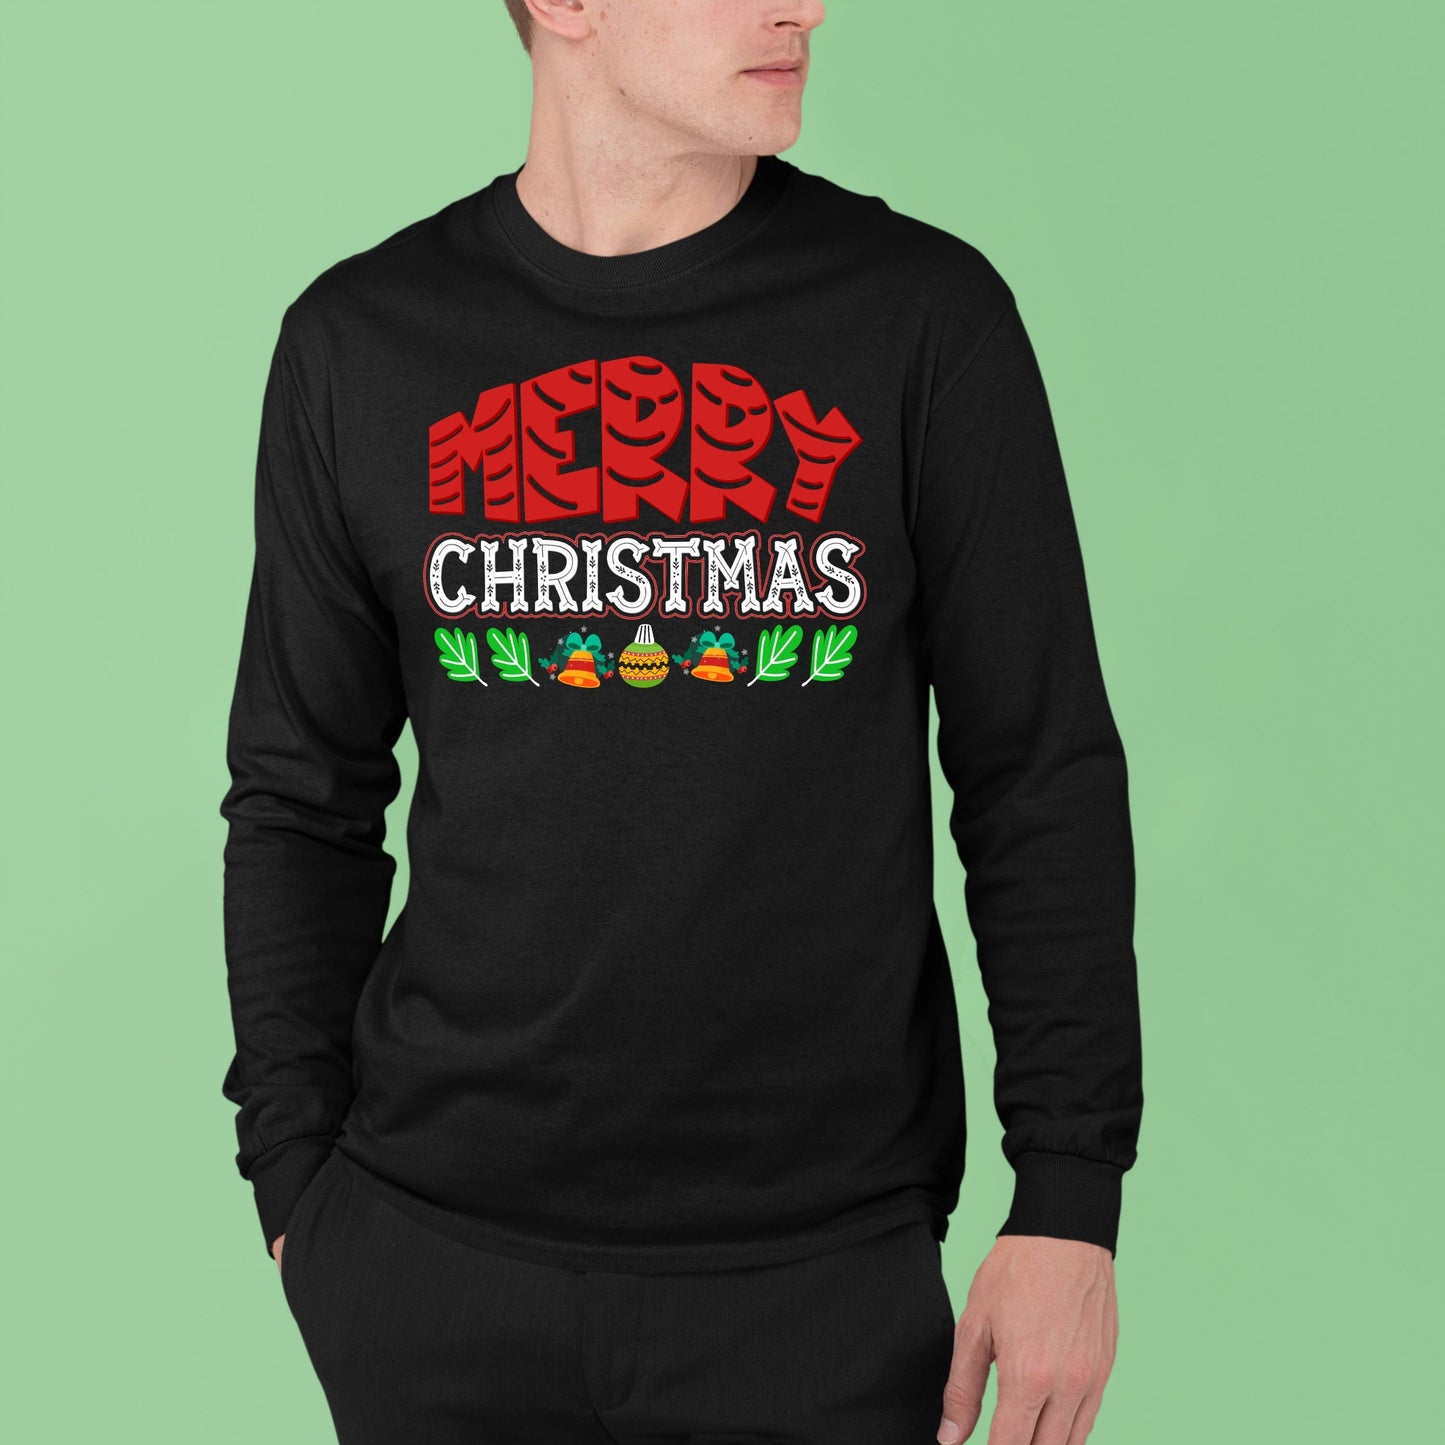 Merry Christmas, Christmas Long Sleeves, Christmas Crewneck For Men, Christmas Present, Christmas Sweatshirt, Christmas Sweater